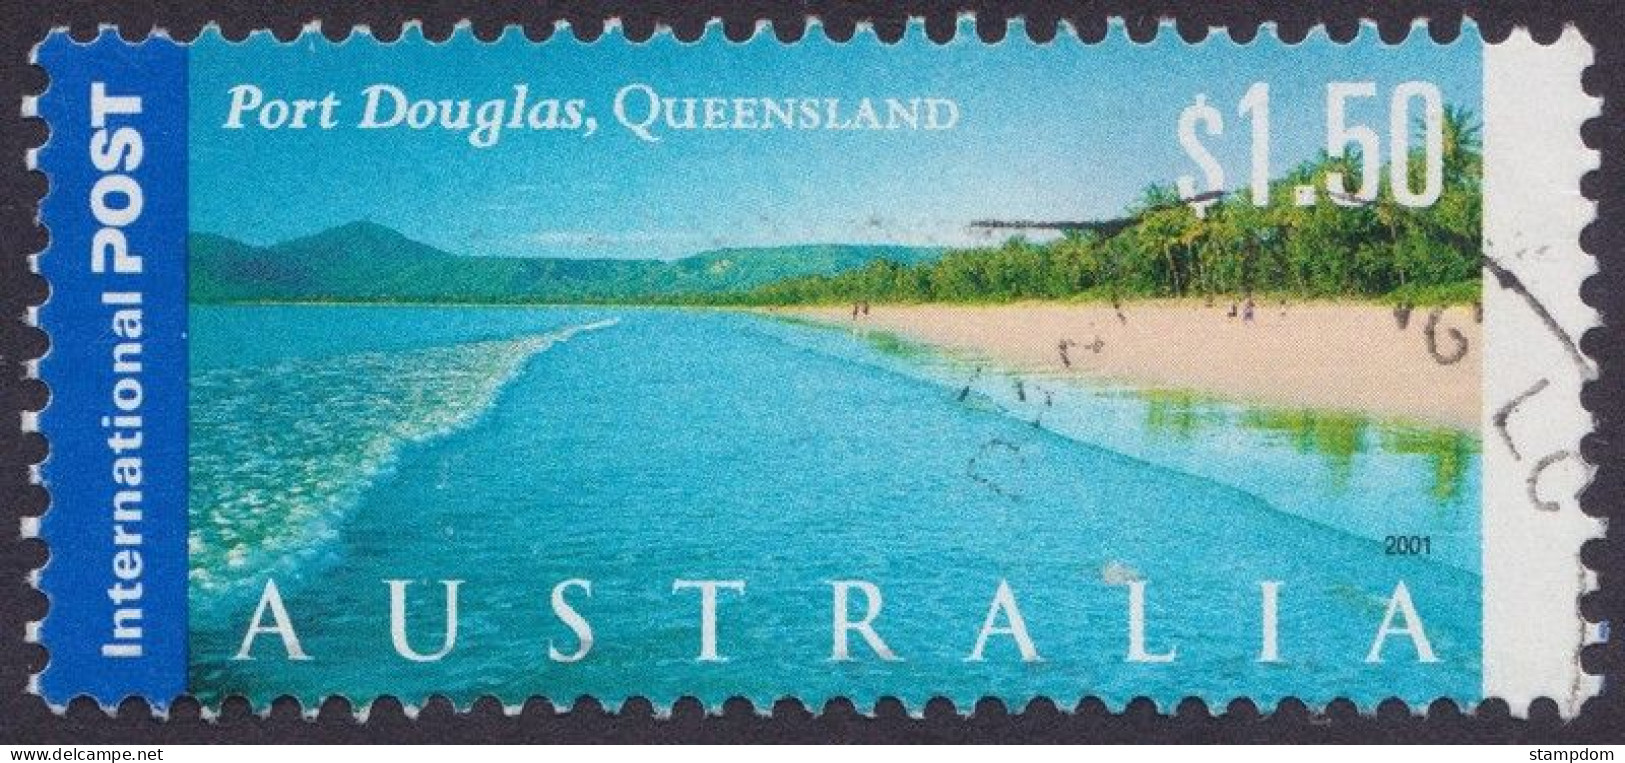 AUSTRALIA 2001 Tourist Attractions $1.50 Port Douglas Sc#1981 USED @O383 - Oblitérés